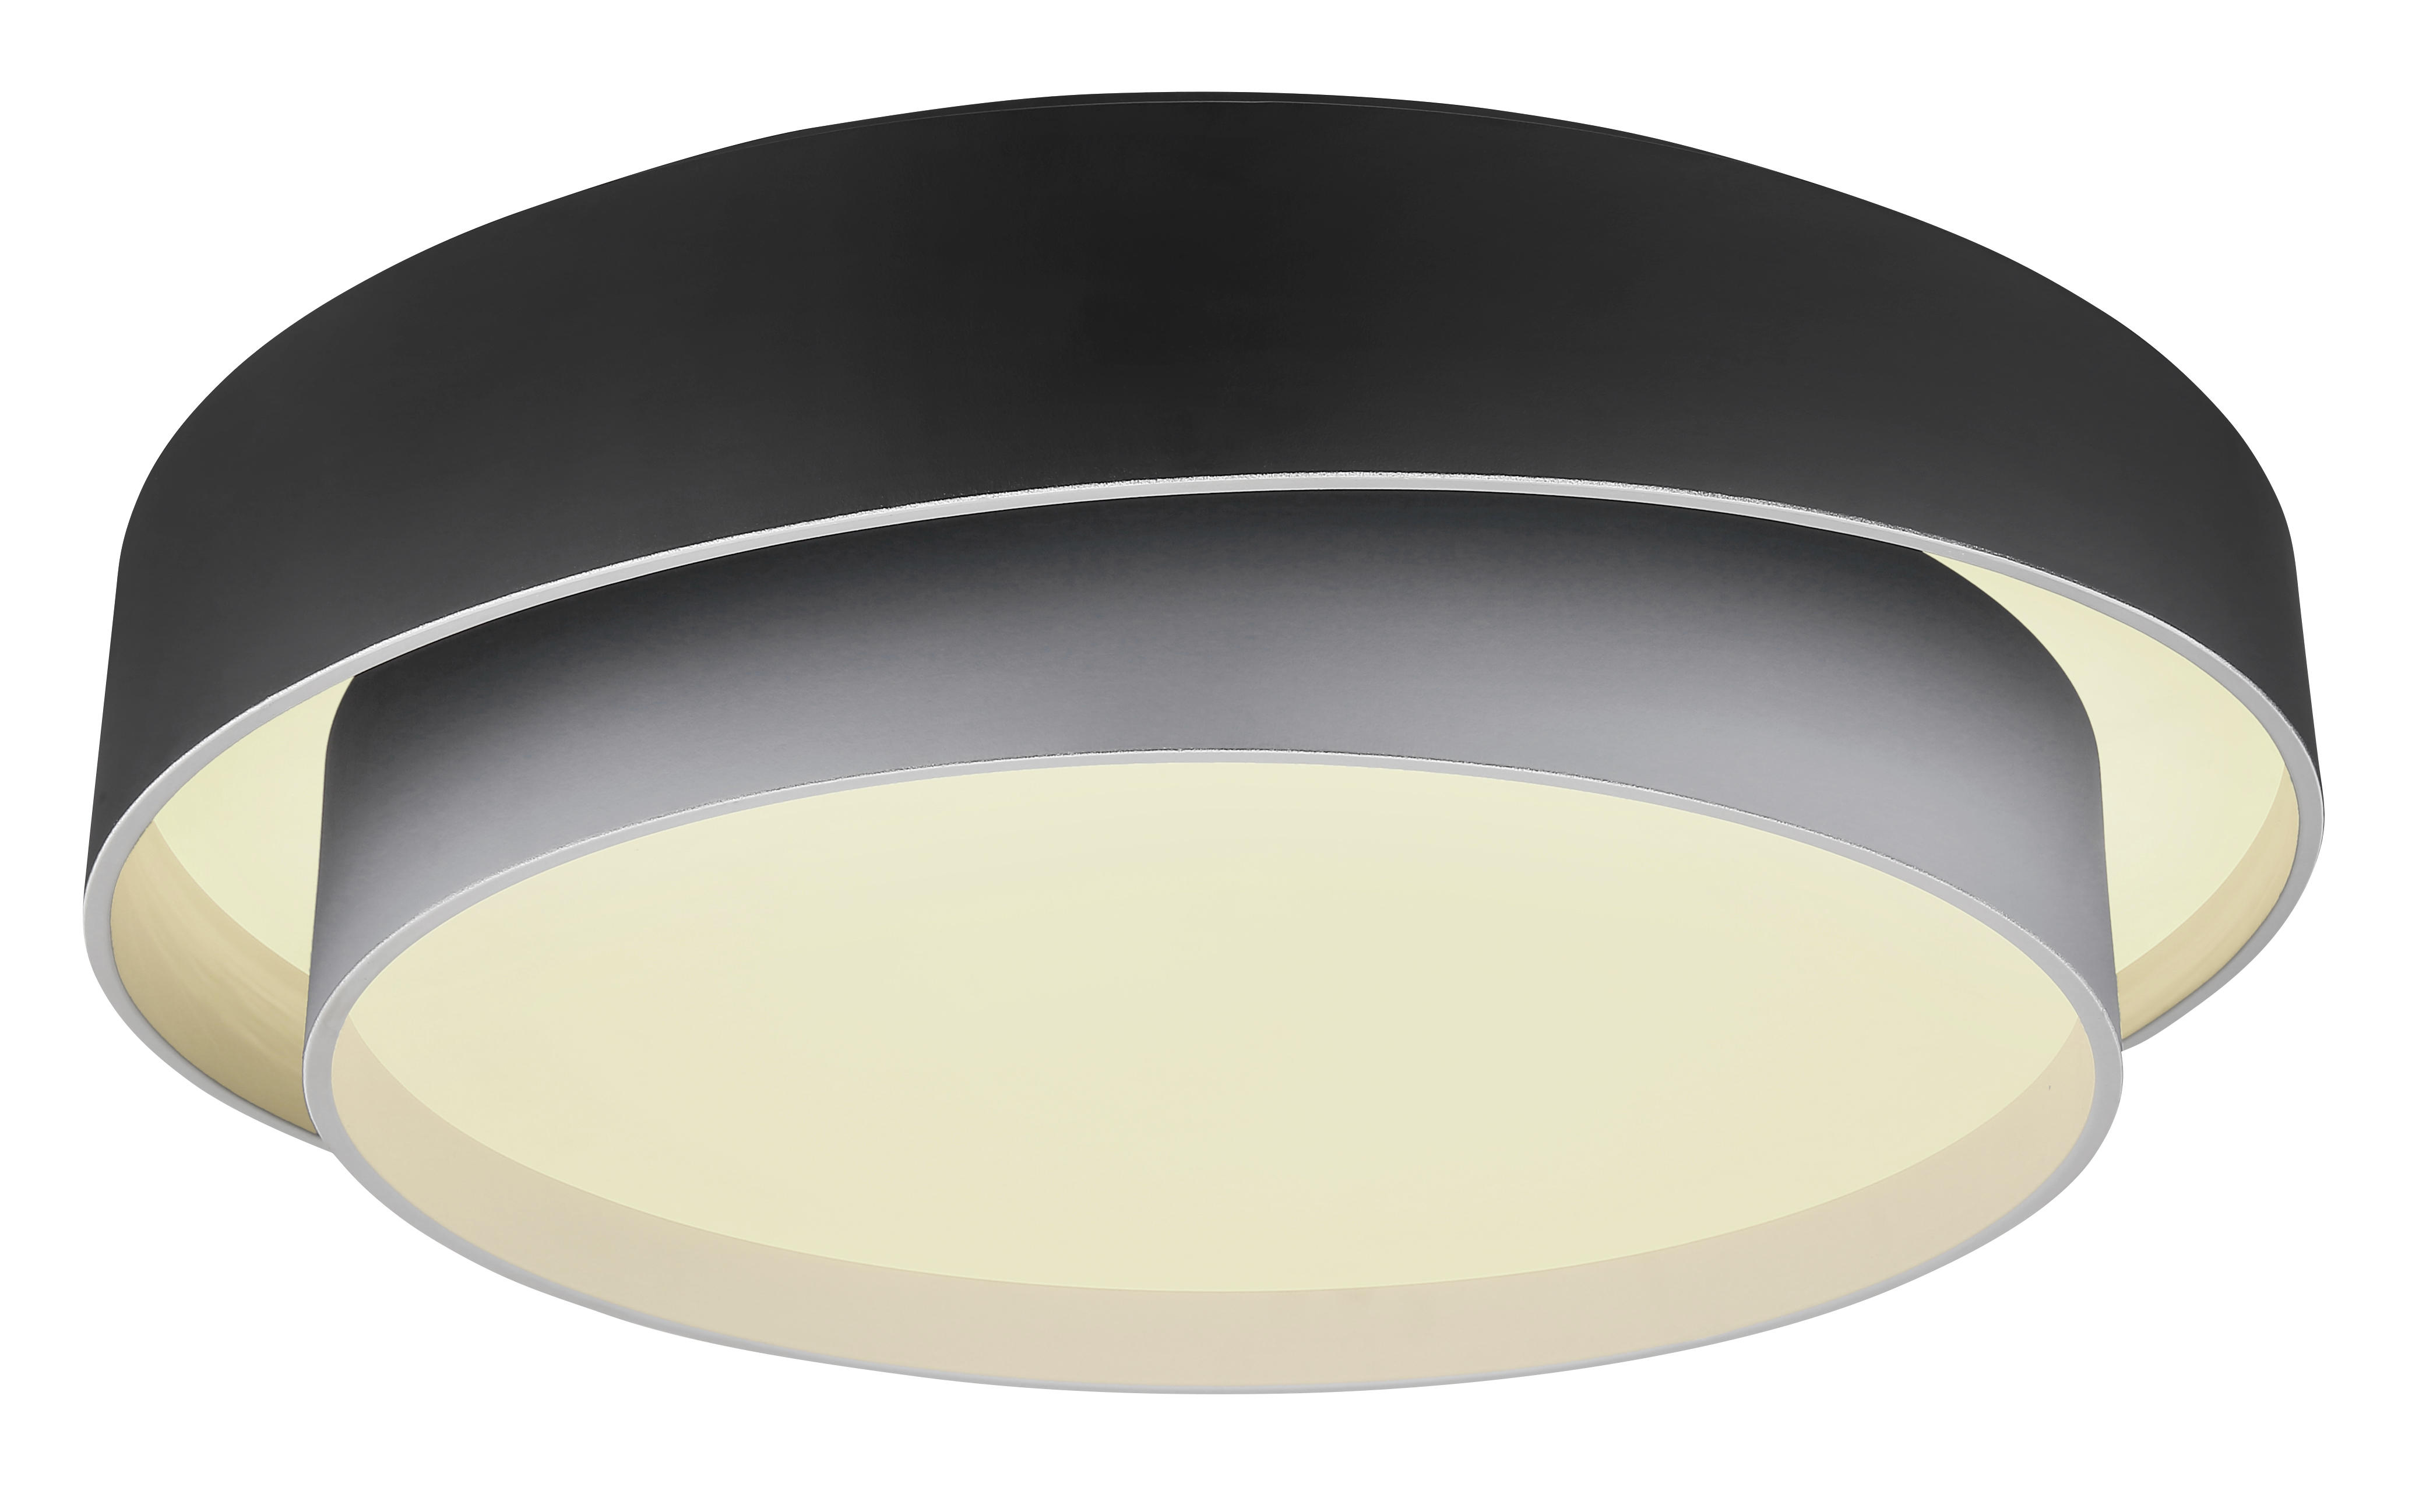 LED-DECKENLEUCHTE  - Opal/Graphitfarben, Design, Kunststoff/Metall (60/14cm) - Globo